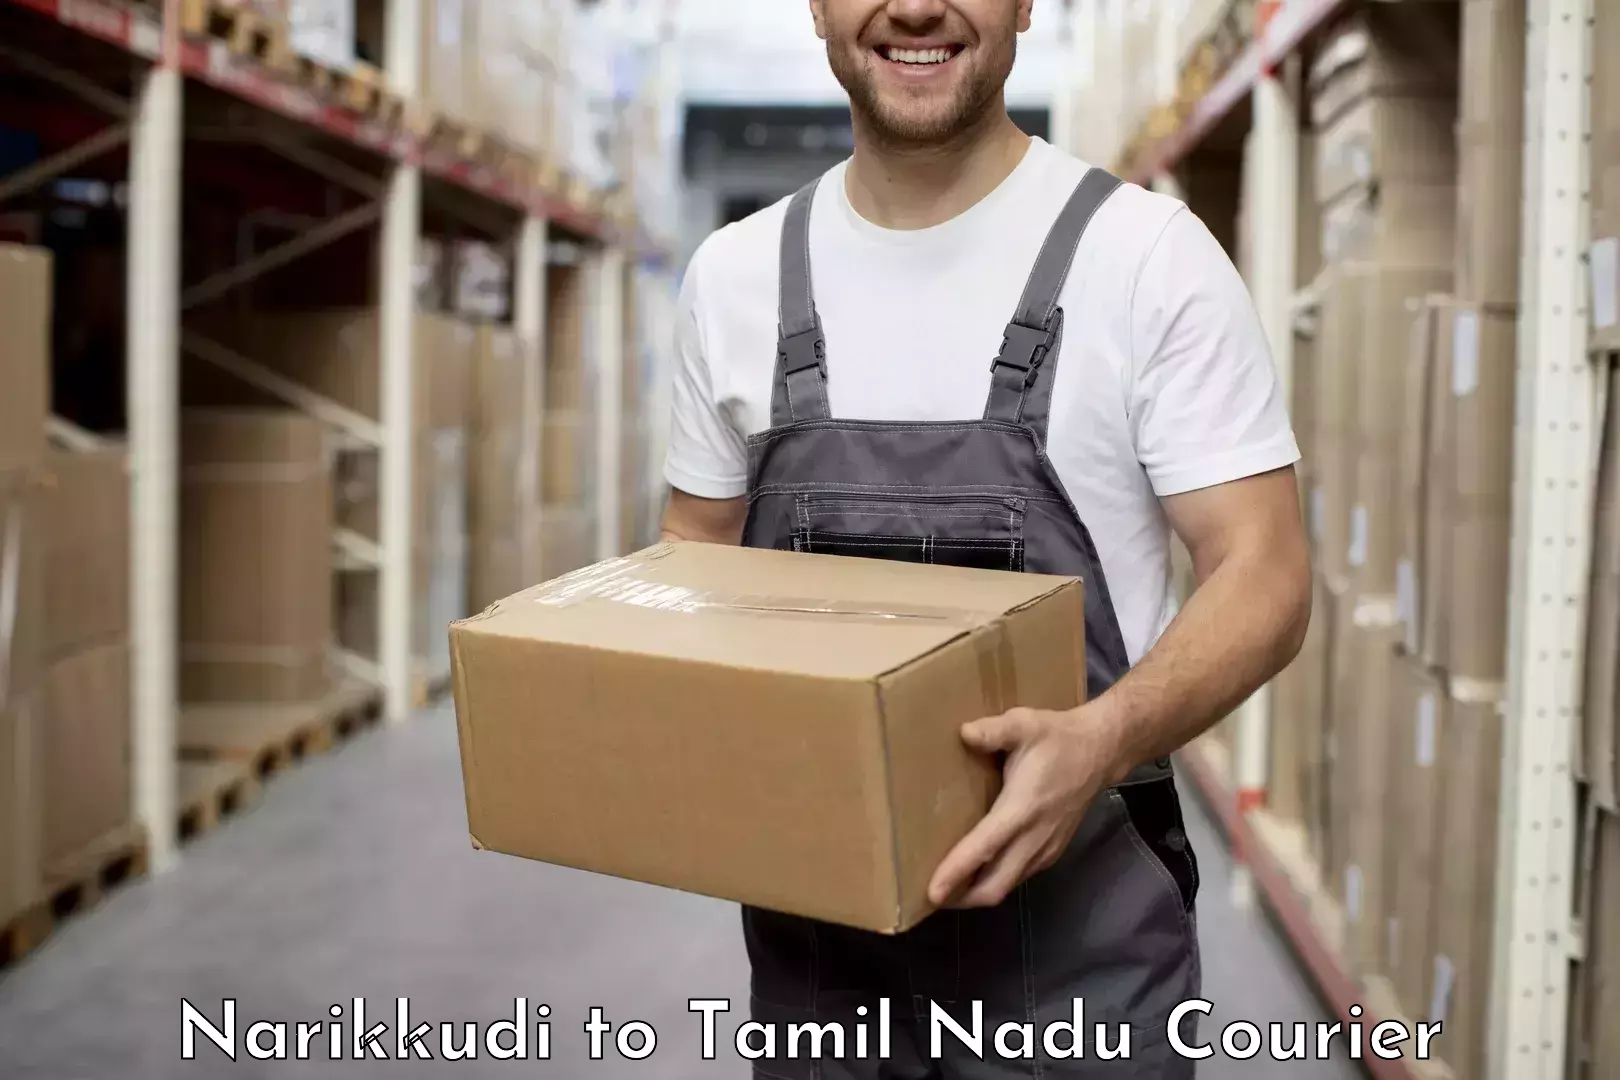 Quality courier services Narikkudi to Tiruvallur